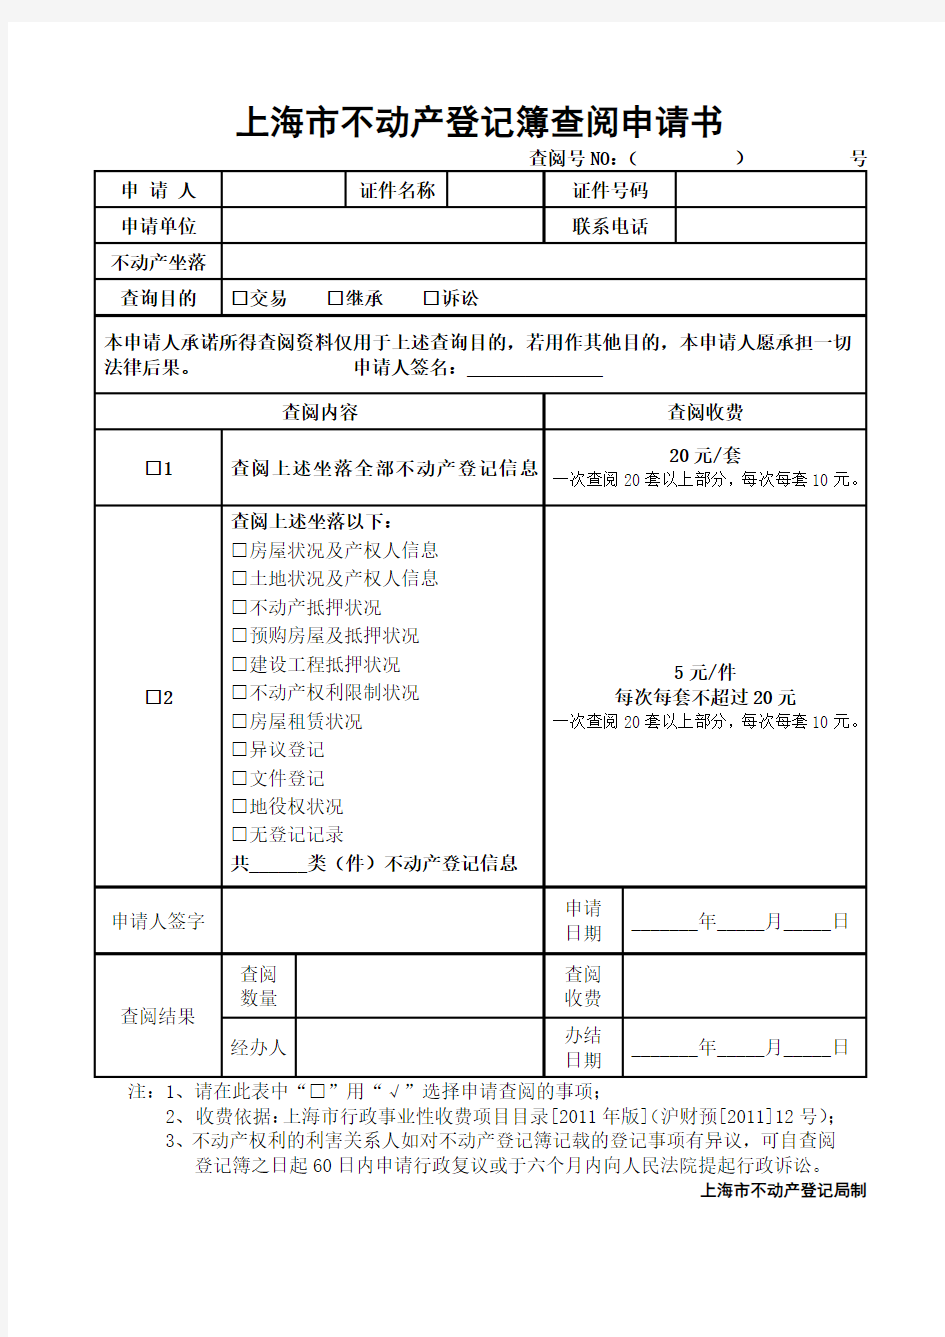 上海不动产登记簿查阅申请书